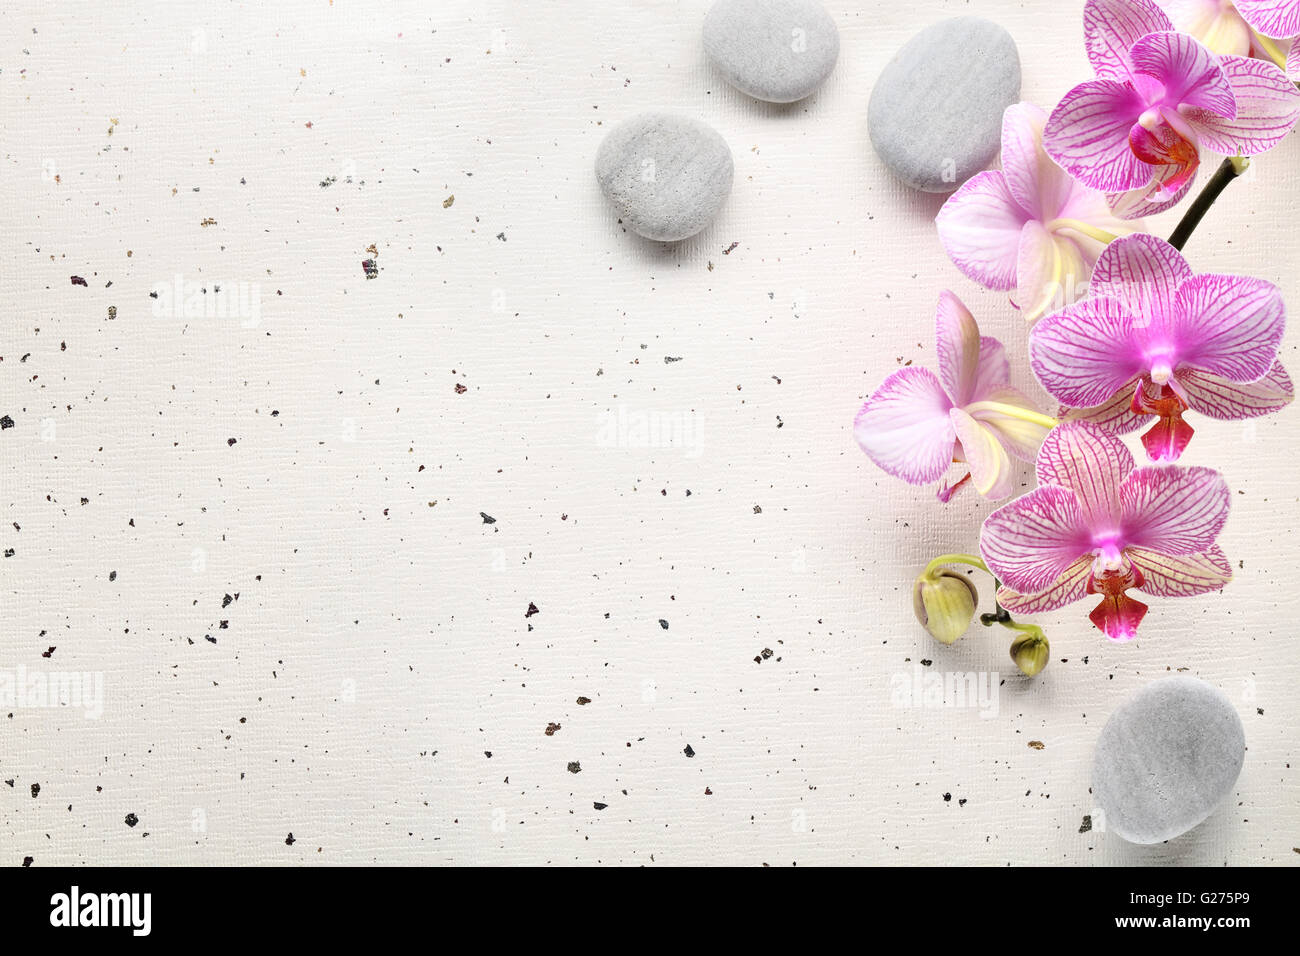 Des pierres et des fleurs orchidée Spa sur papier Banque D'Images